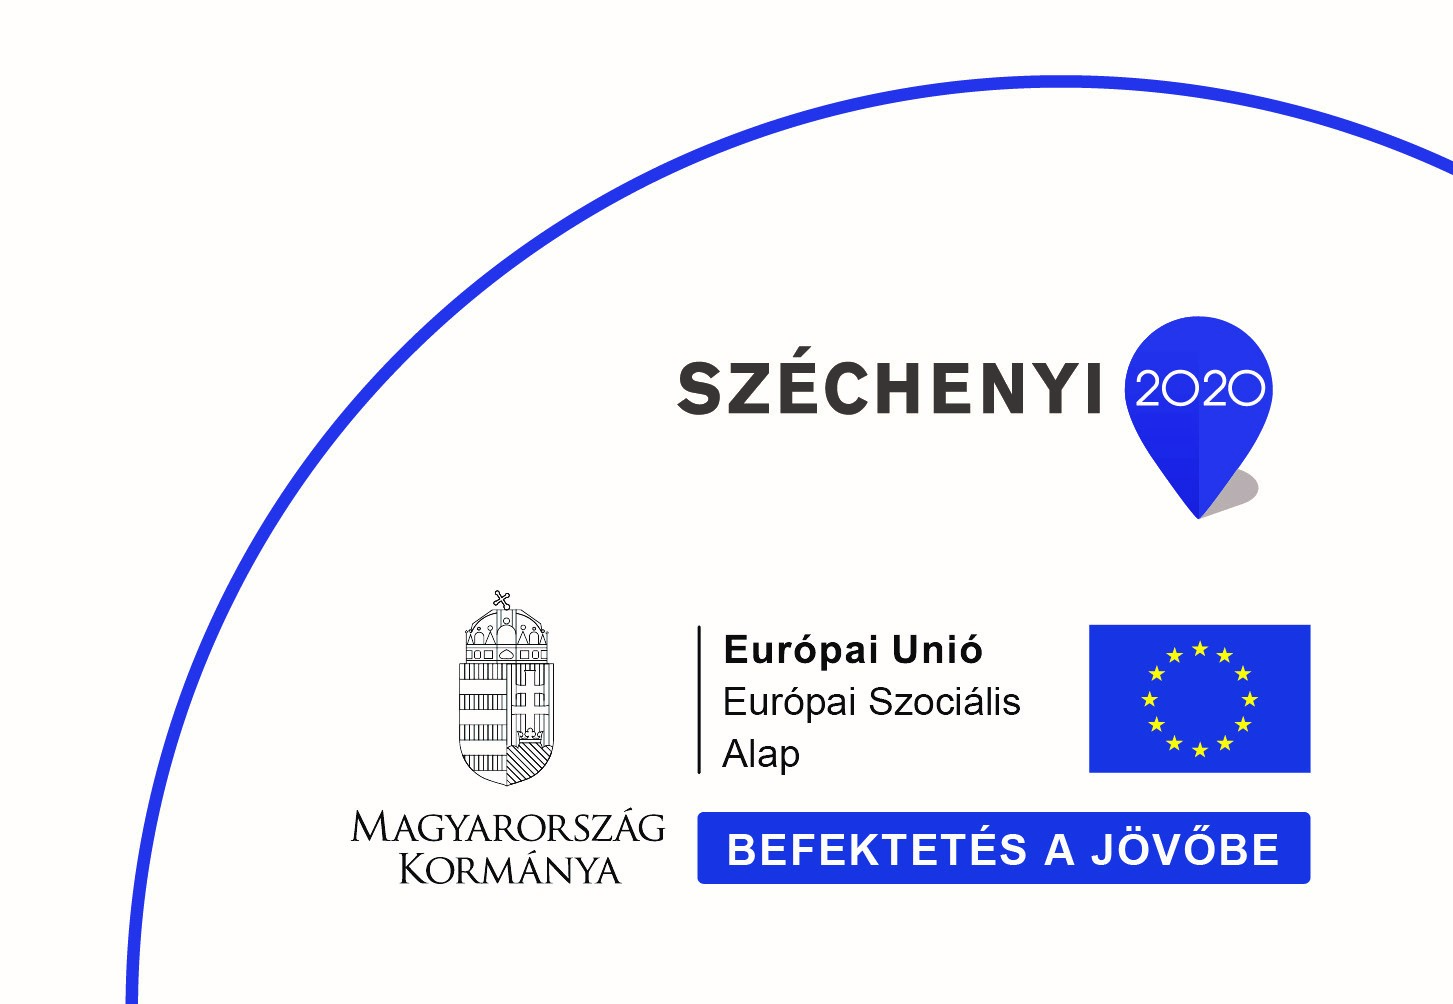 Szechenyi 2020 logo Efopokhoz felkoriv 1